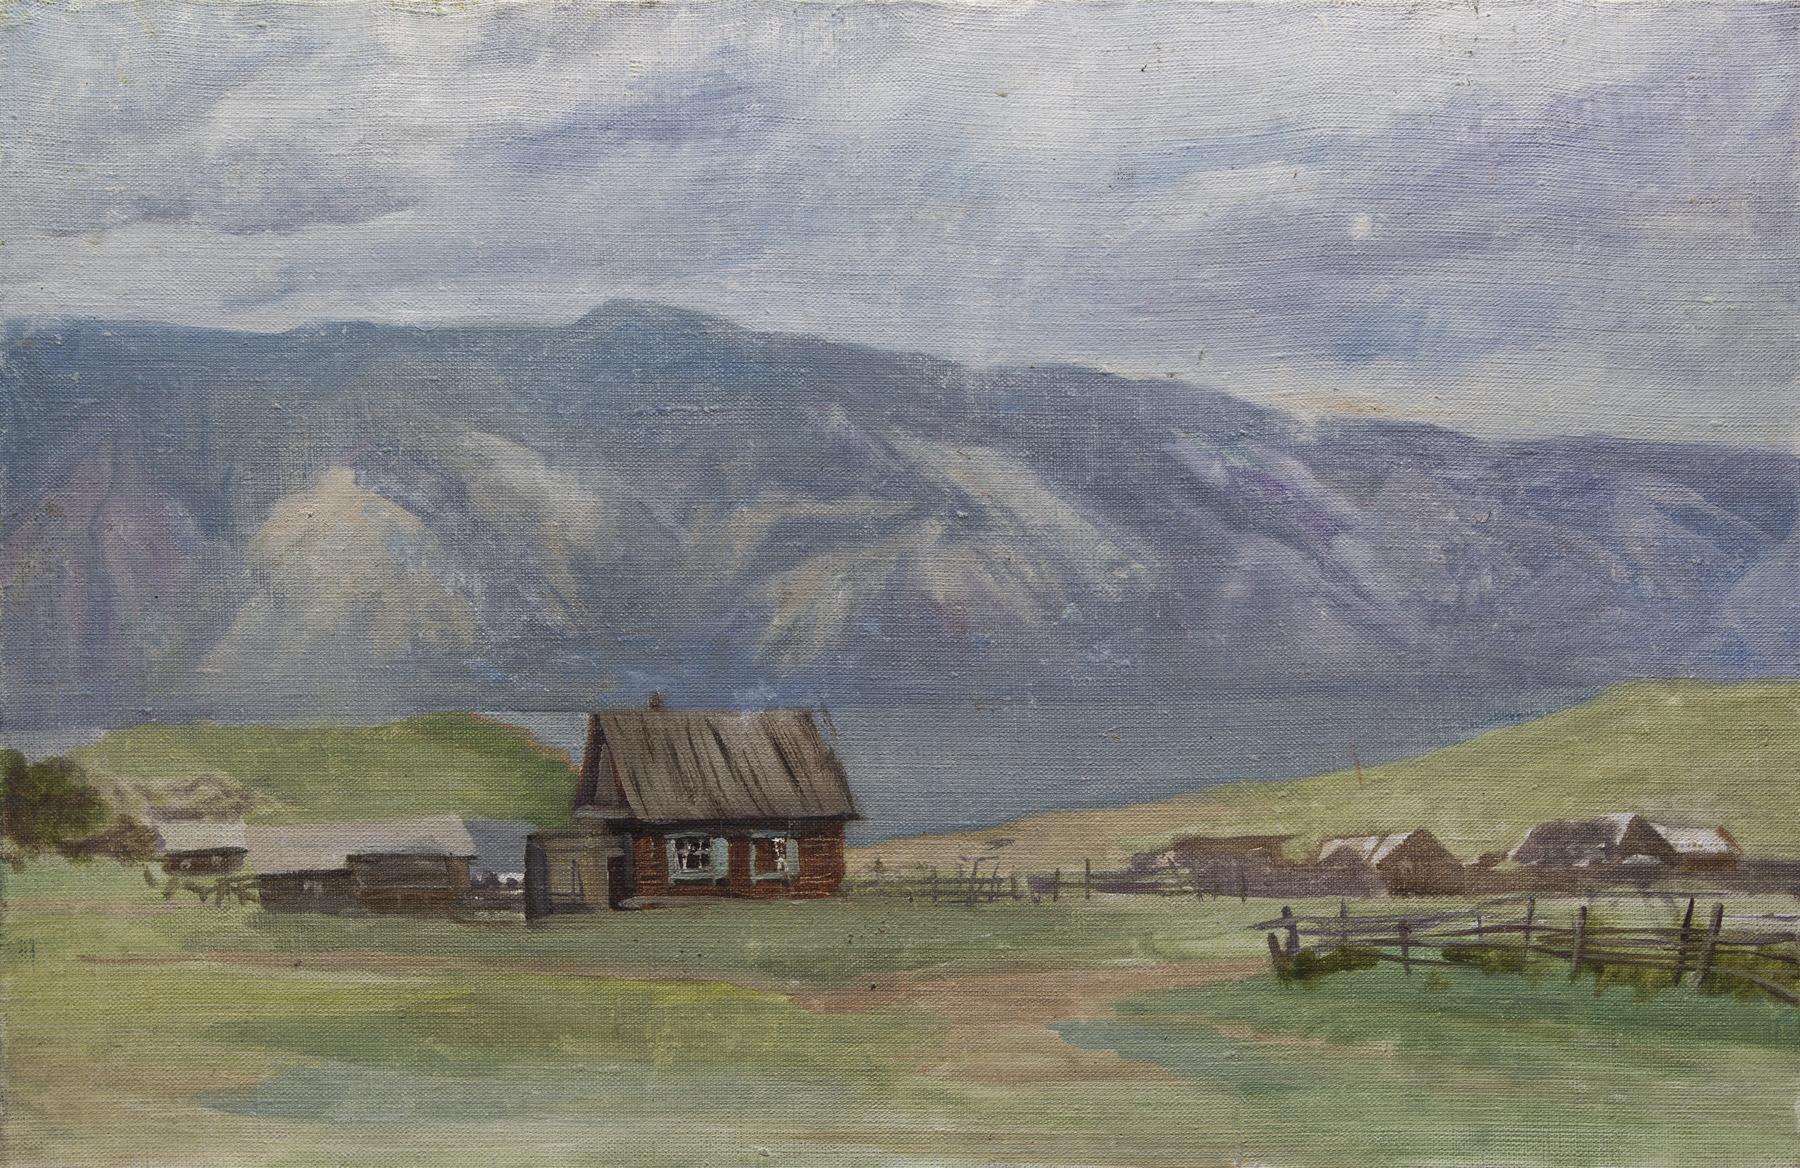 Baikal. The lake house.36x55 cm, oil on canvas